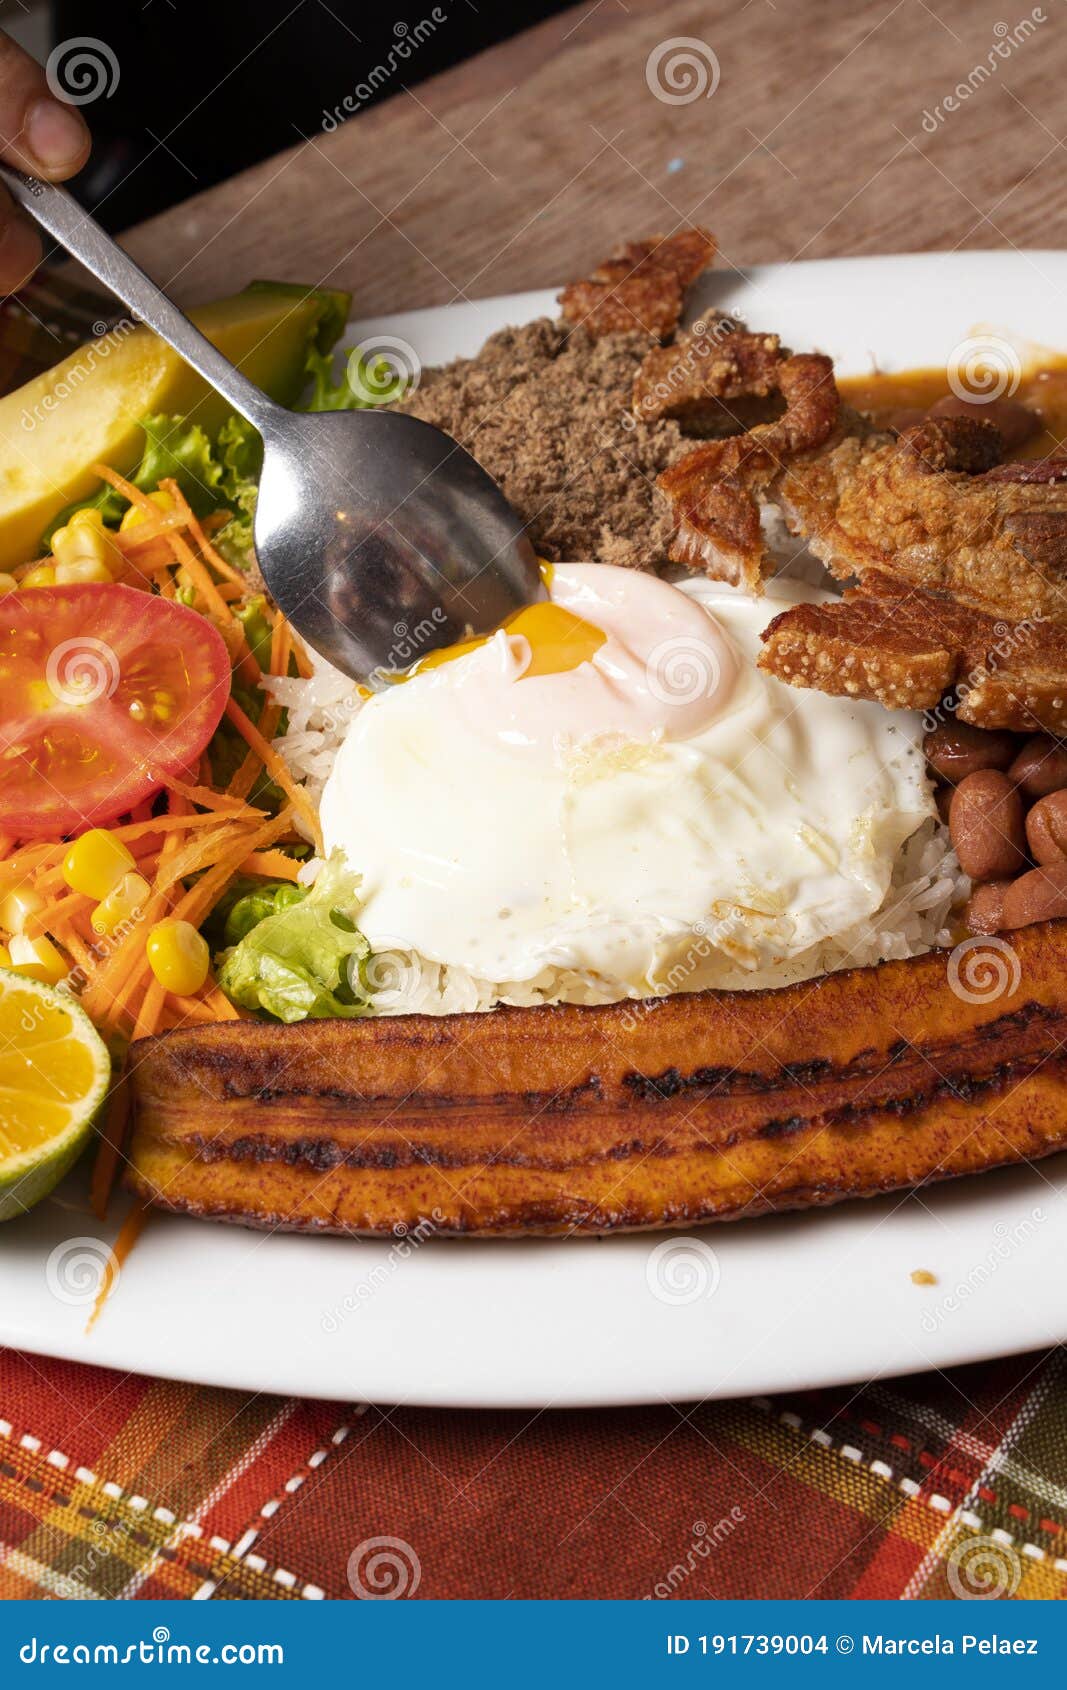 plato de comida popular de antioquia colombia con frijoles huevo, cero carne y plÃÂ¡tano